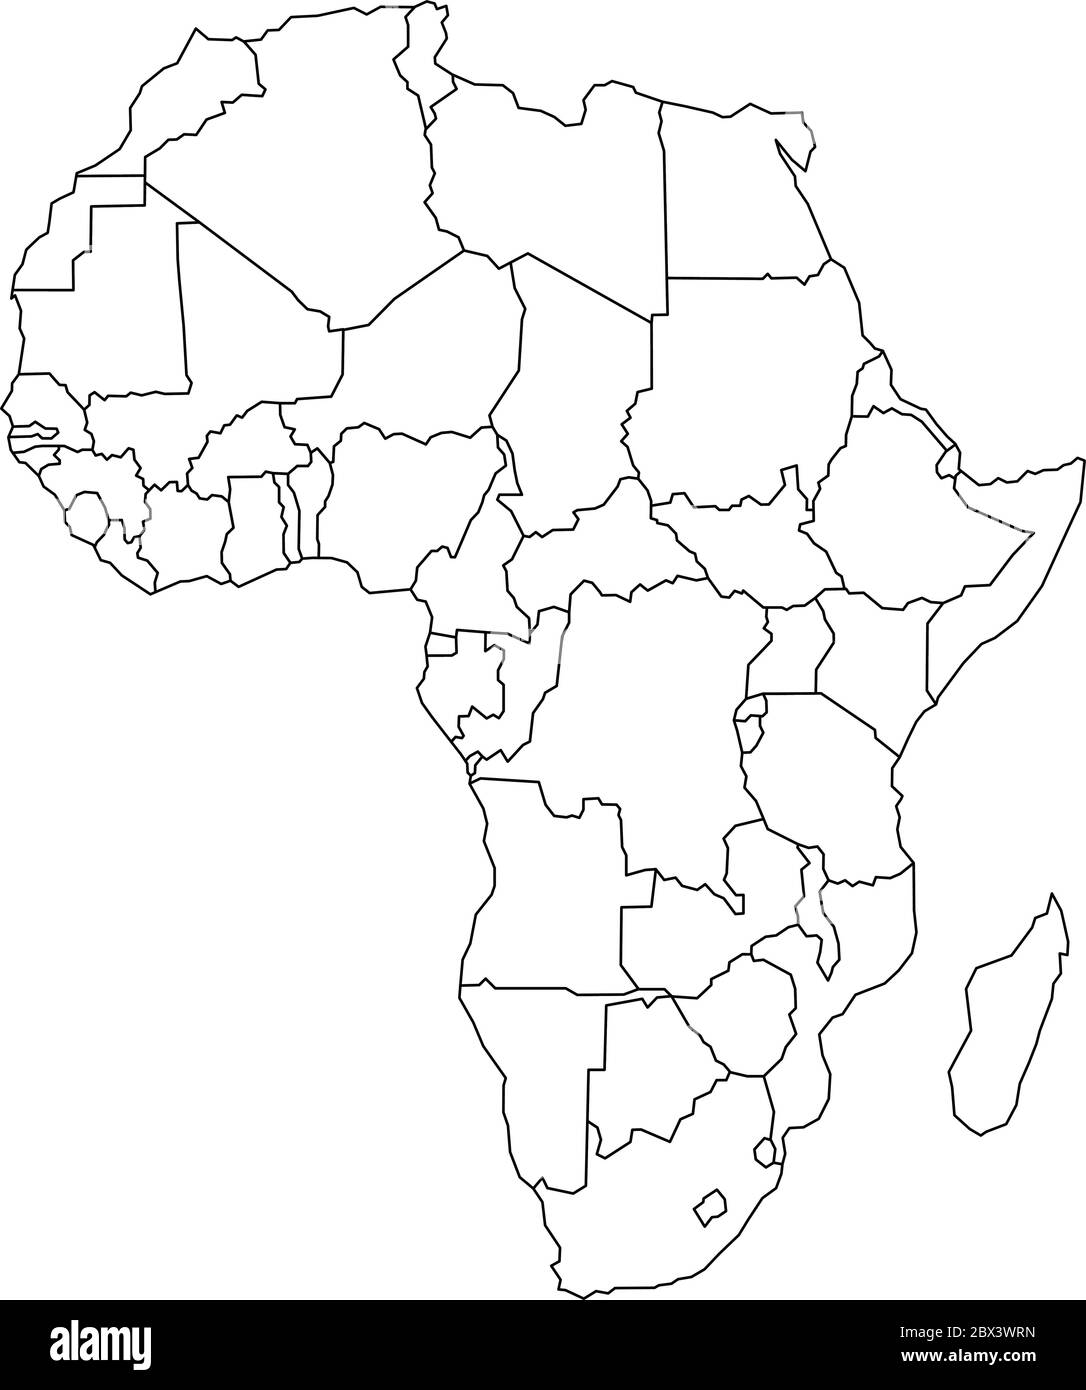 Karte des Kontinents Arfica. Einfache schwarze Drahtrahmen-Umriss mit nationalen Grenzen auf weißem Hintergrund. Vektorgrafik. Stock Vektor